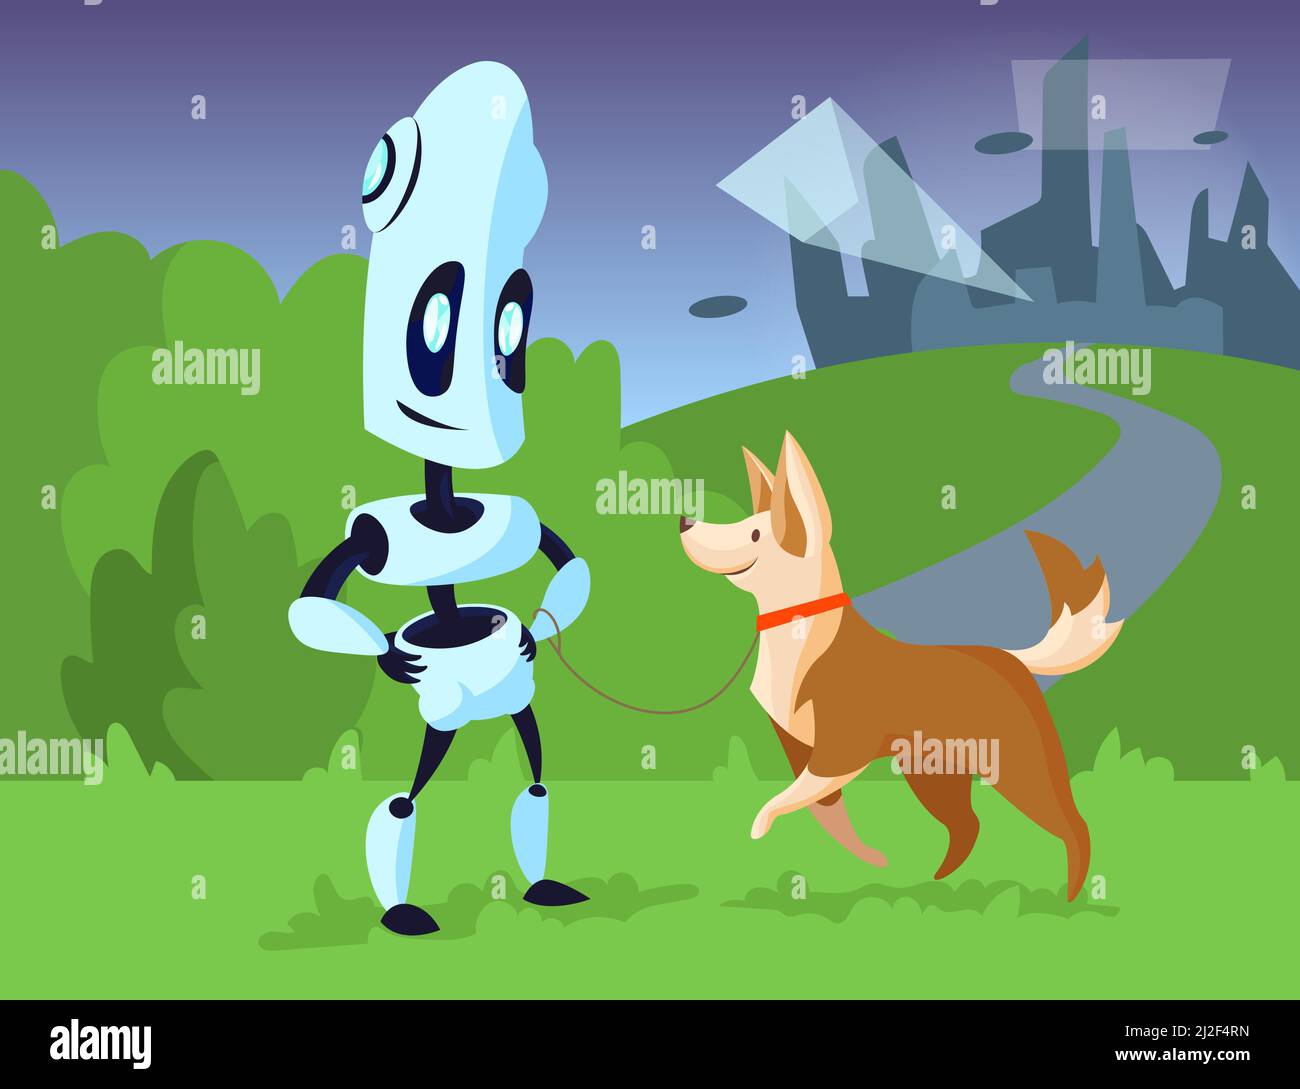 Robot cartone animato cane da passeggio in illustrazione del parco.  Carattere meccanico sorridente con felice animale domestico al guinzaglio,  silhouette di edifici alti sullo sfondo. Modalità Immagine e Vettoriale -  Alamy